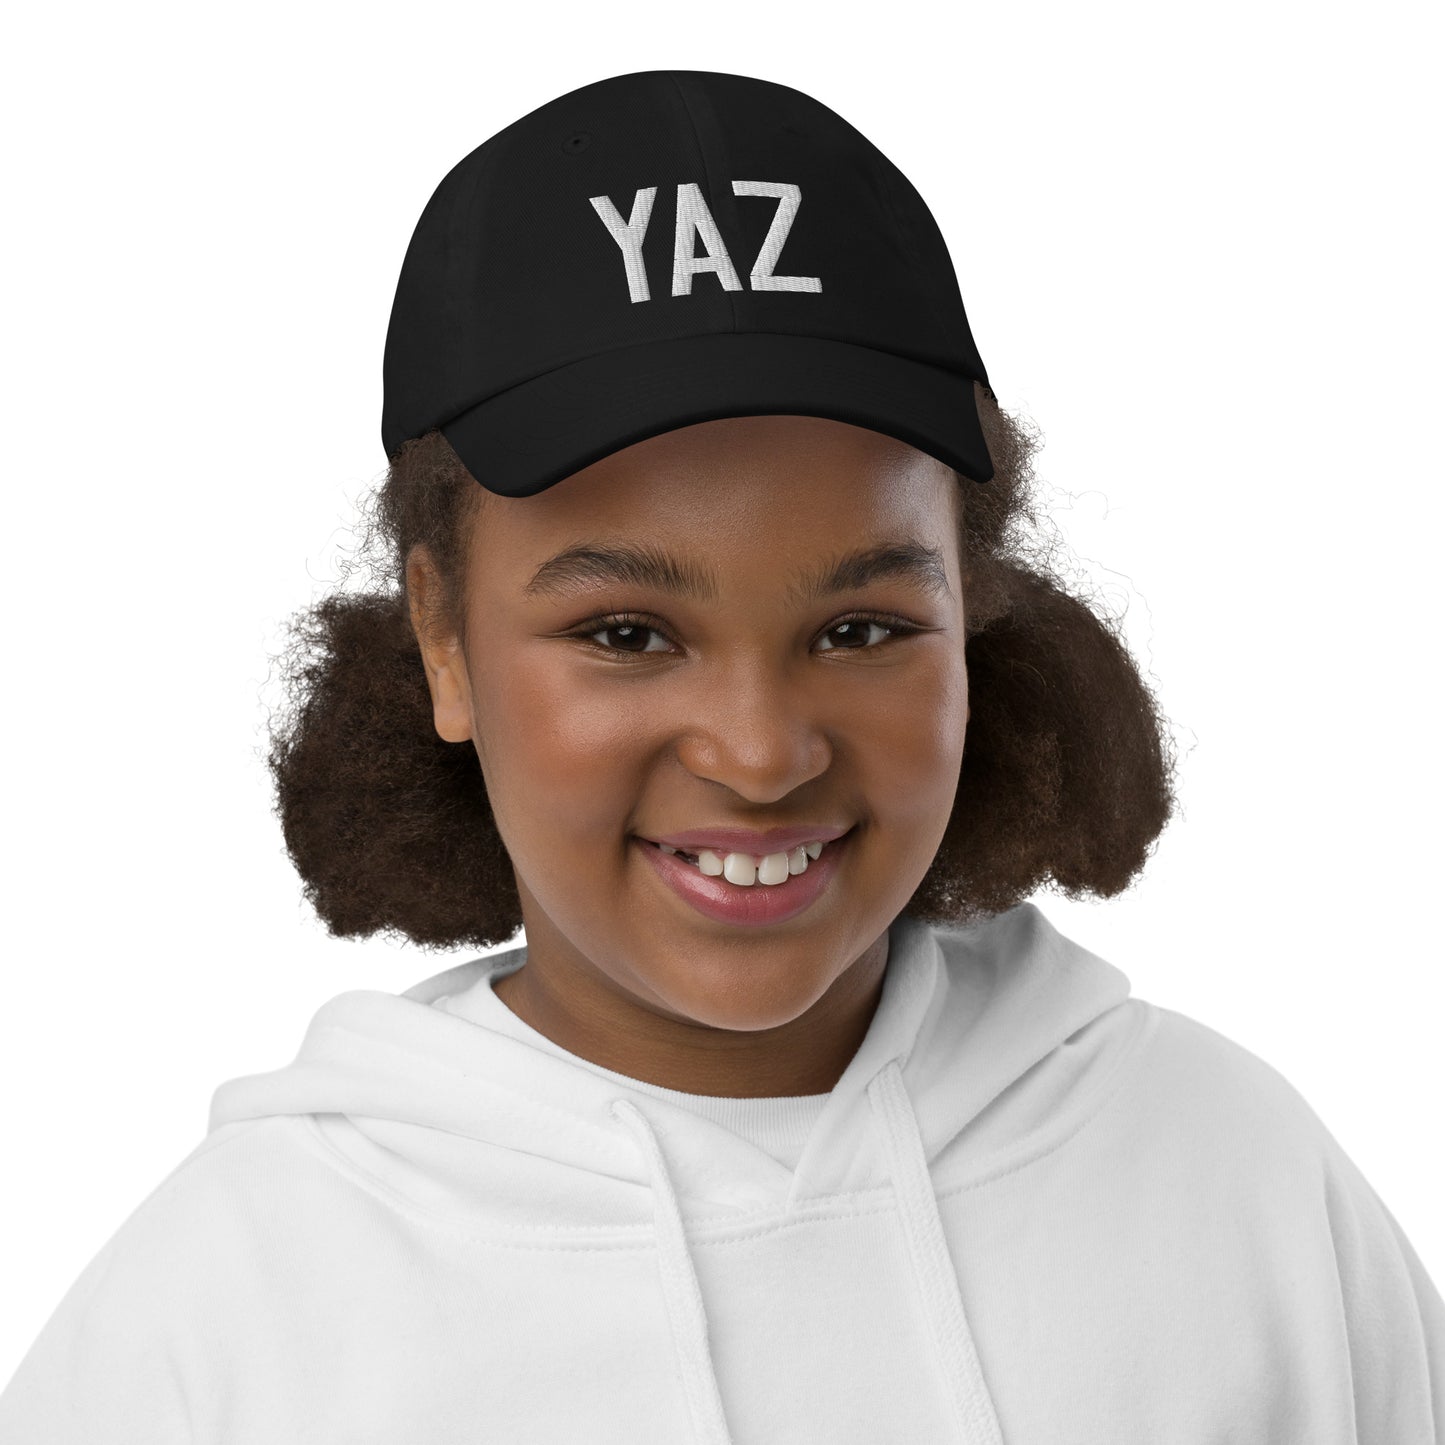 Airport Code Kid's Baseball Cap - White • YAZ Tofino • YHM Designs - Image 02